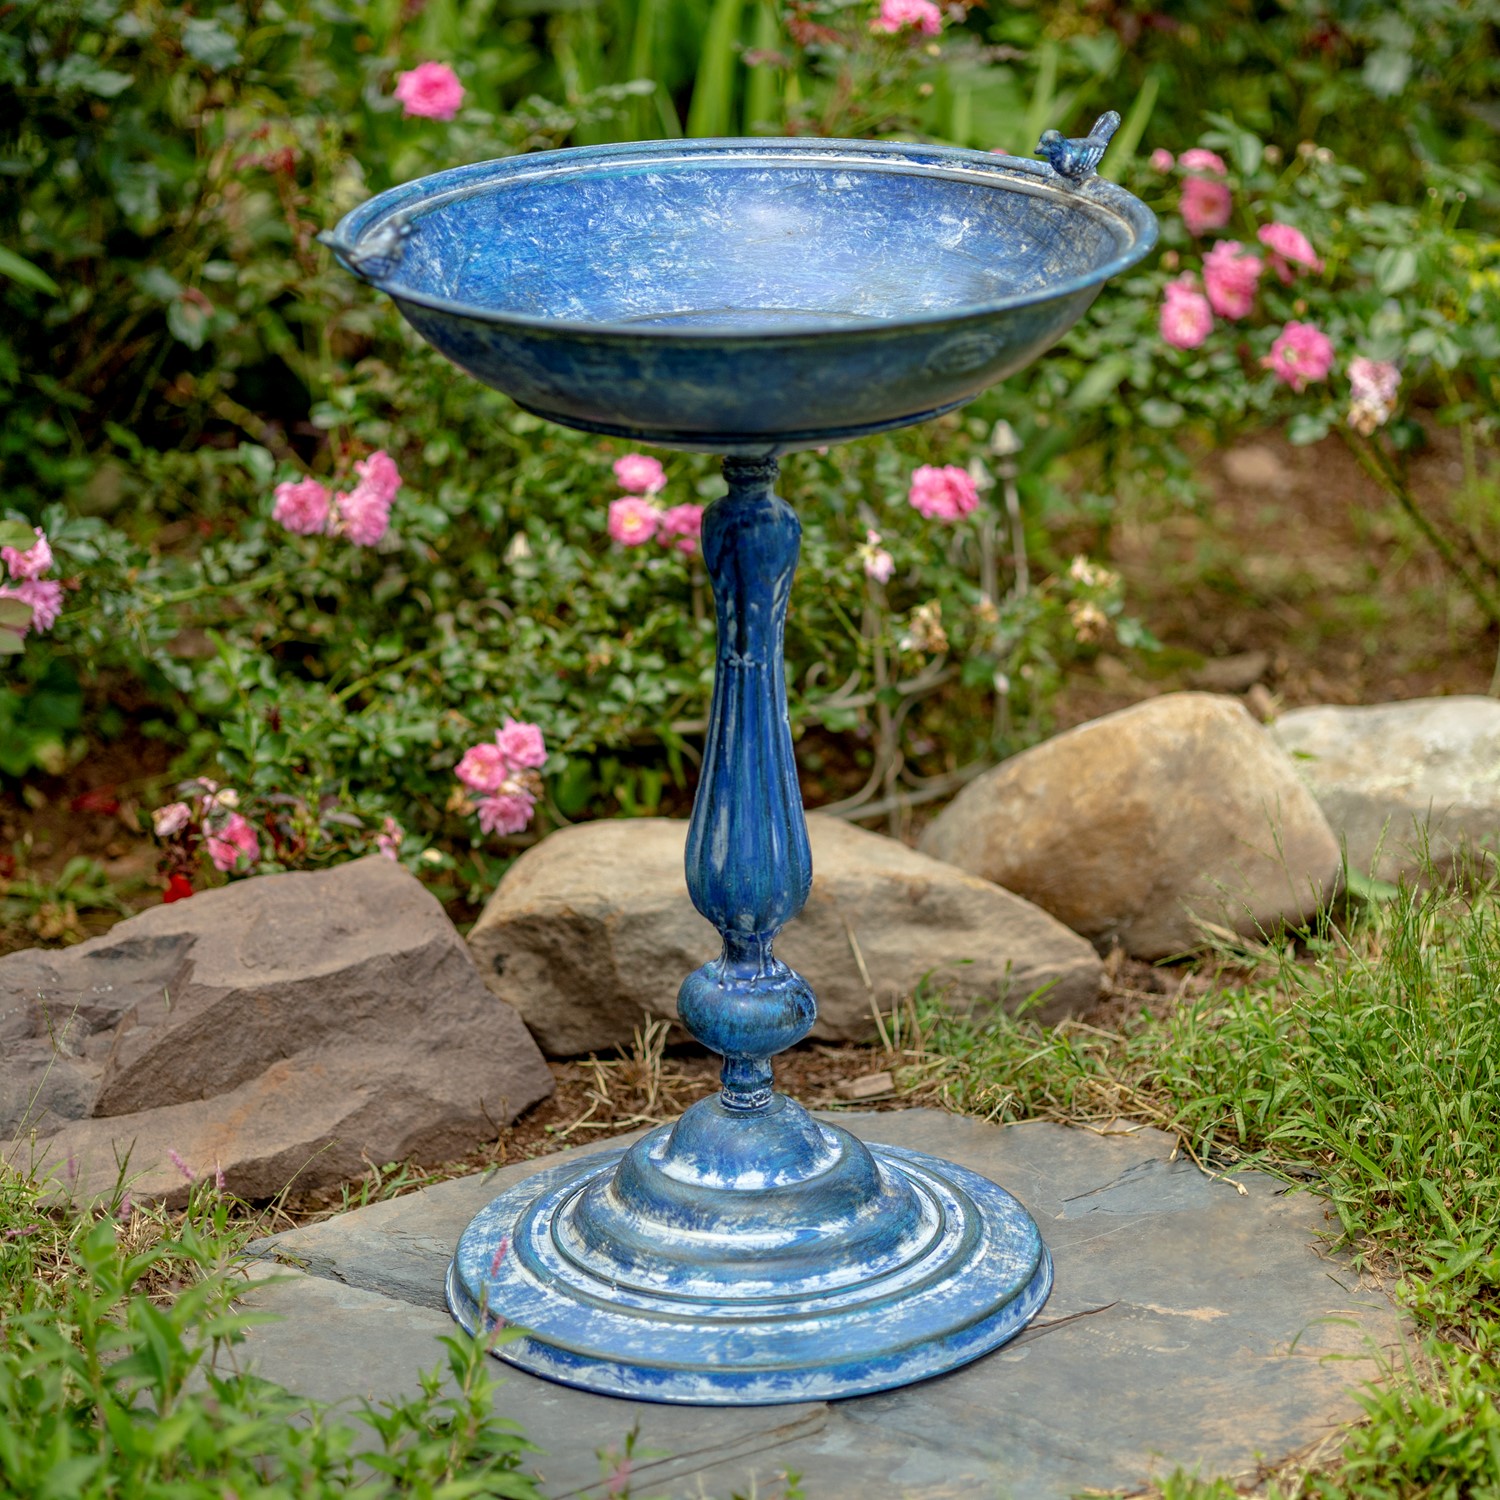 Zaer Ltd International 28.75" Tall Round Pedestal Birdbath with Bird Details in Antique Blue ZR181173-BL